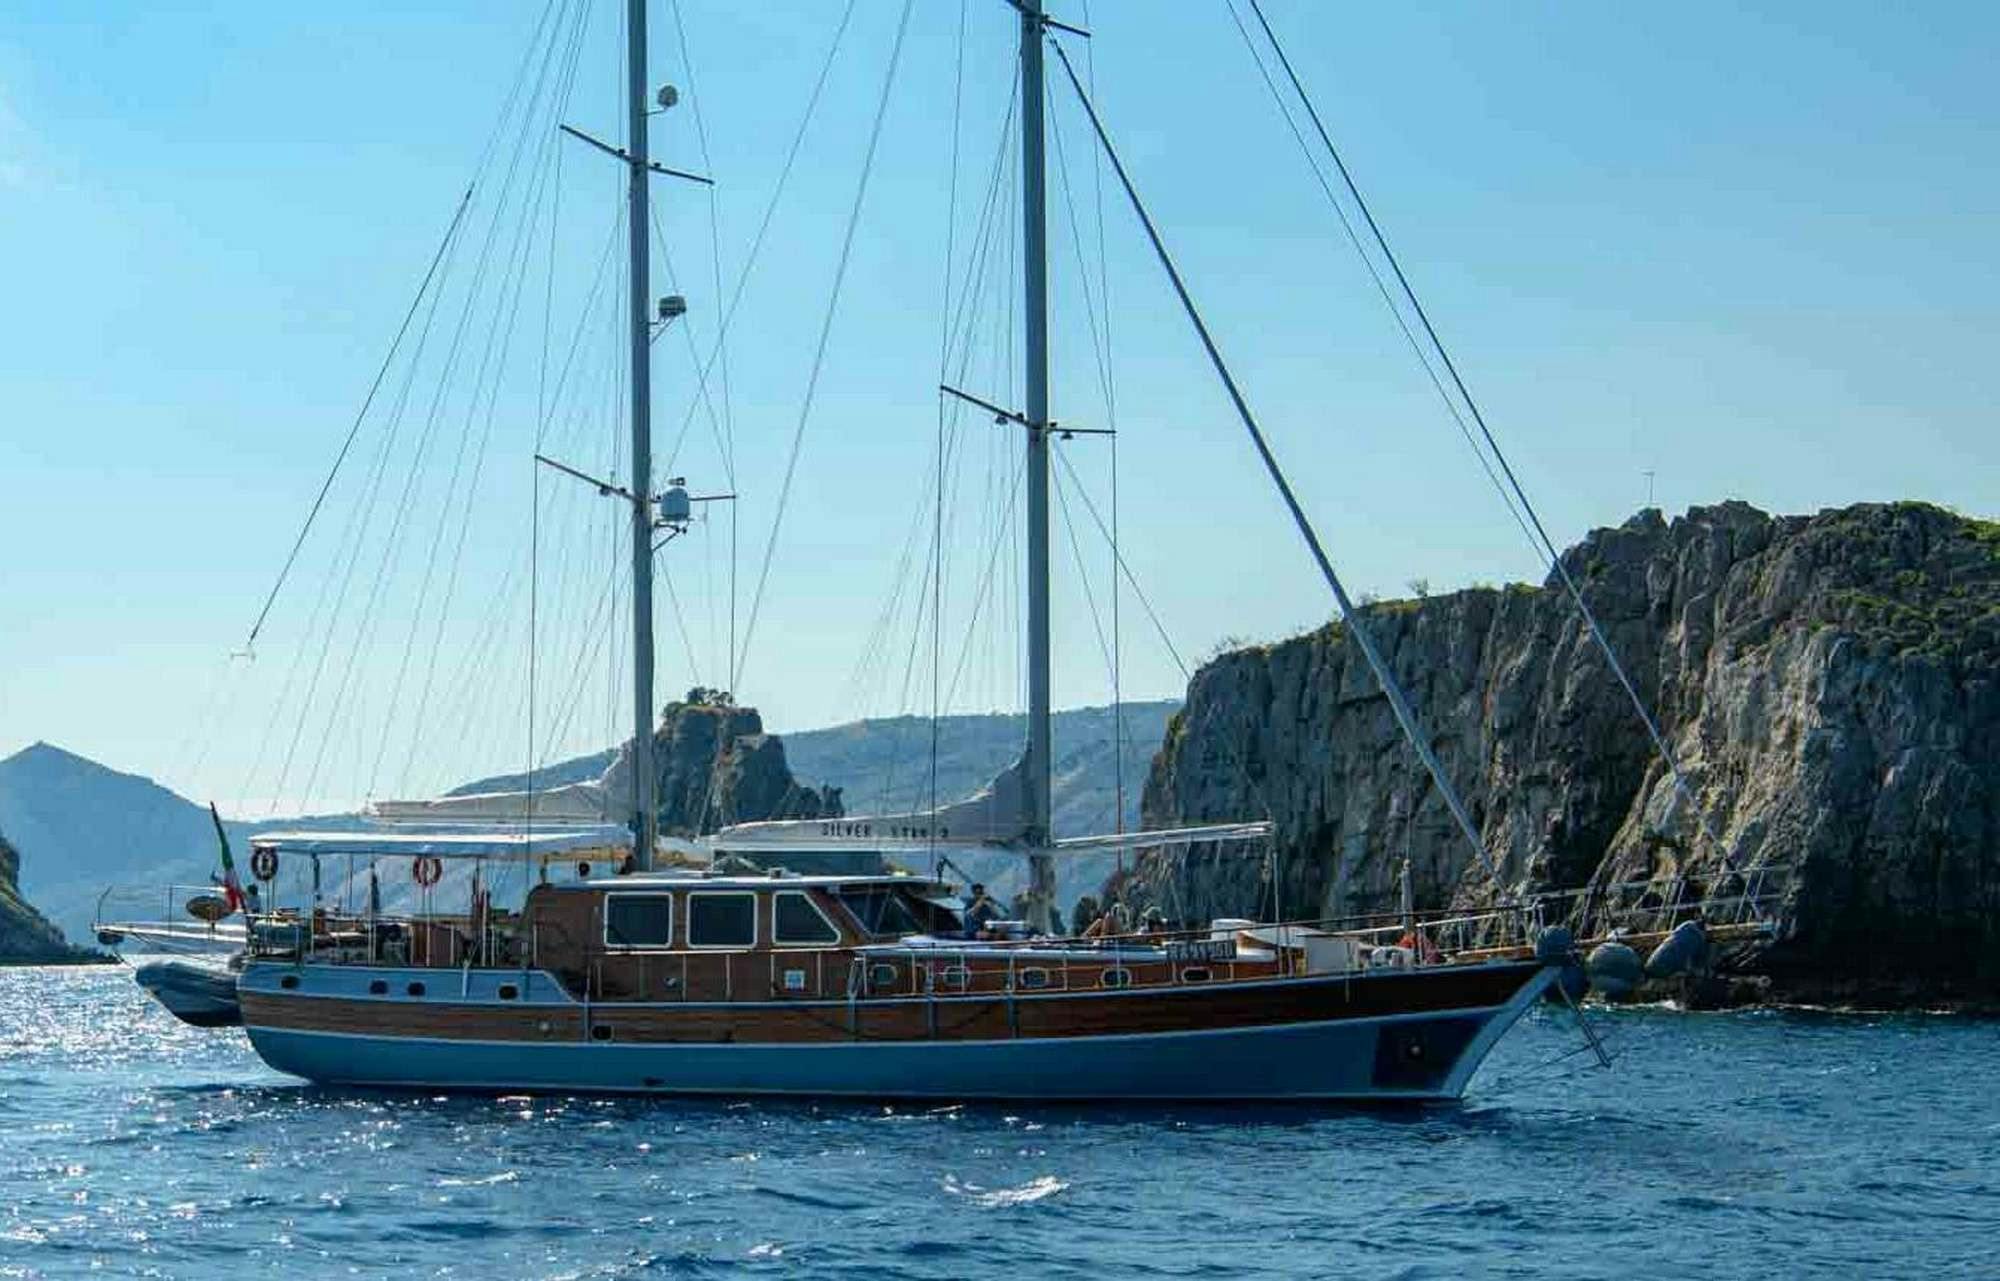 SILVER STAR 2 - Yacht Charter Scarlino & Boat hire in Fr. Riviera & Tyrrhenian Sea 1